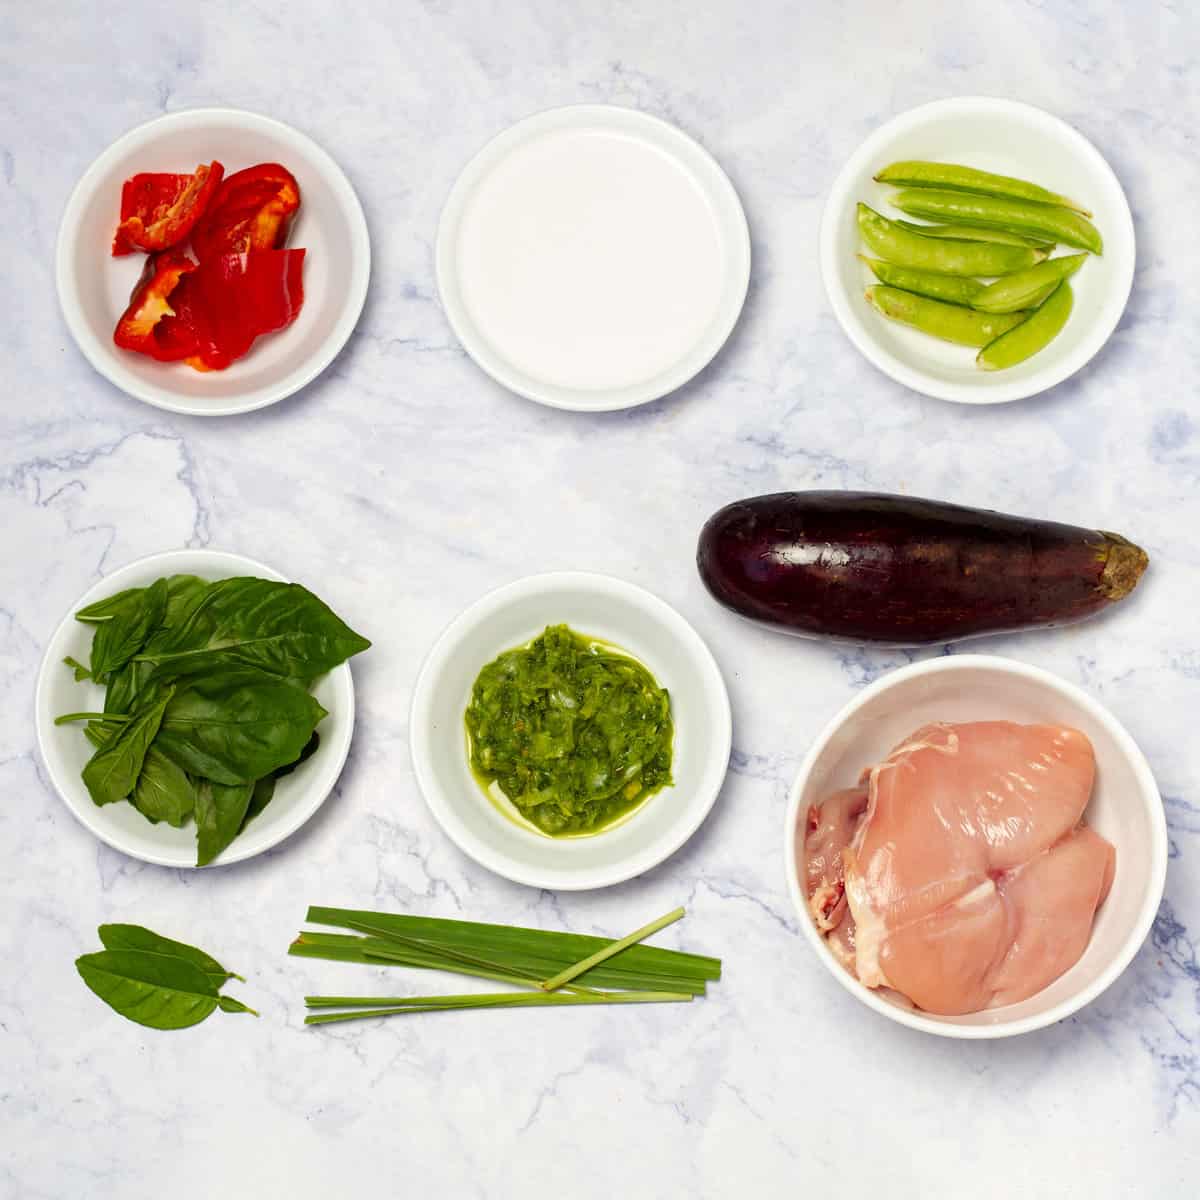 Thai Green Curry Chicken Ingredients